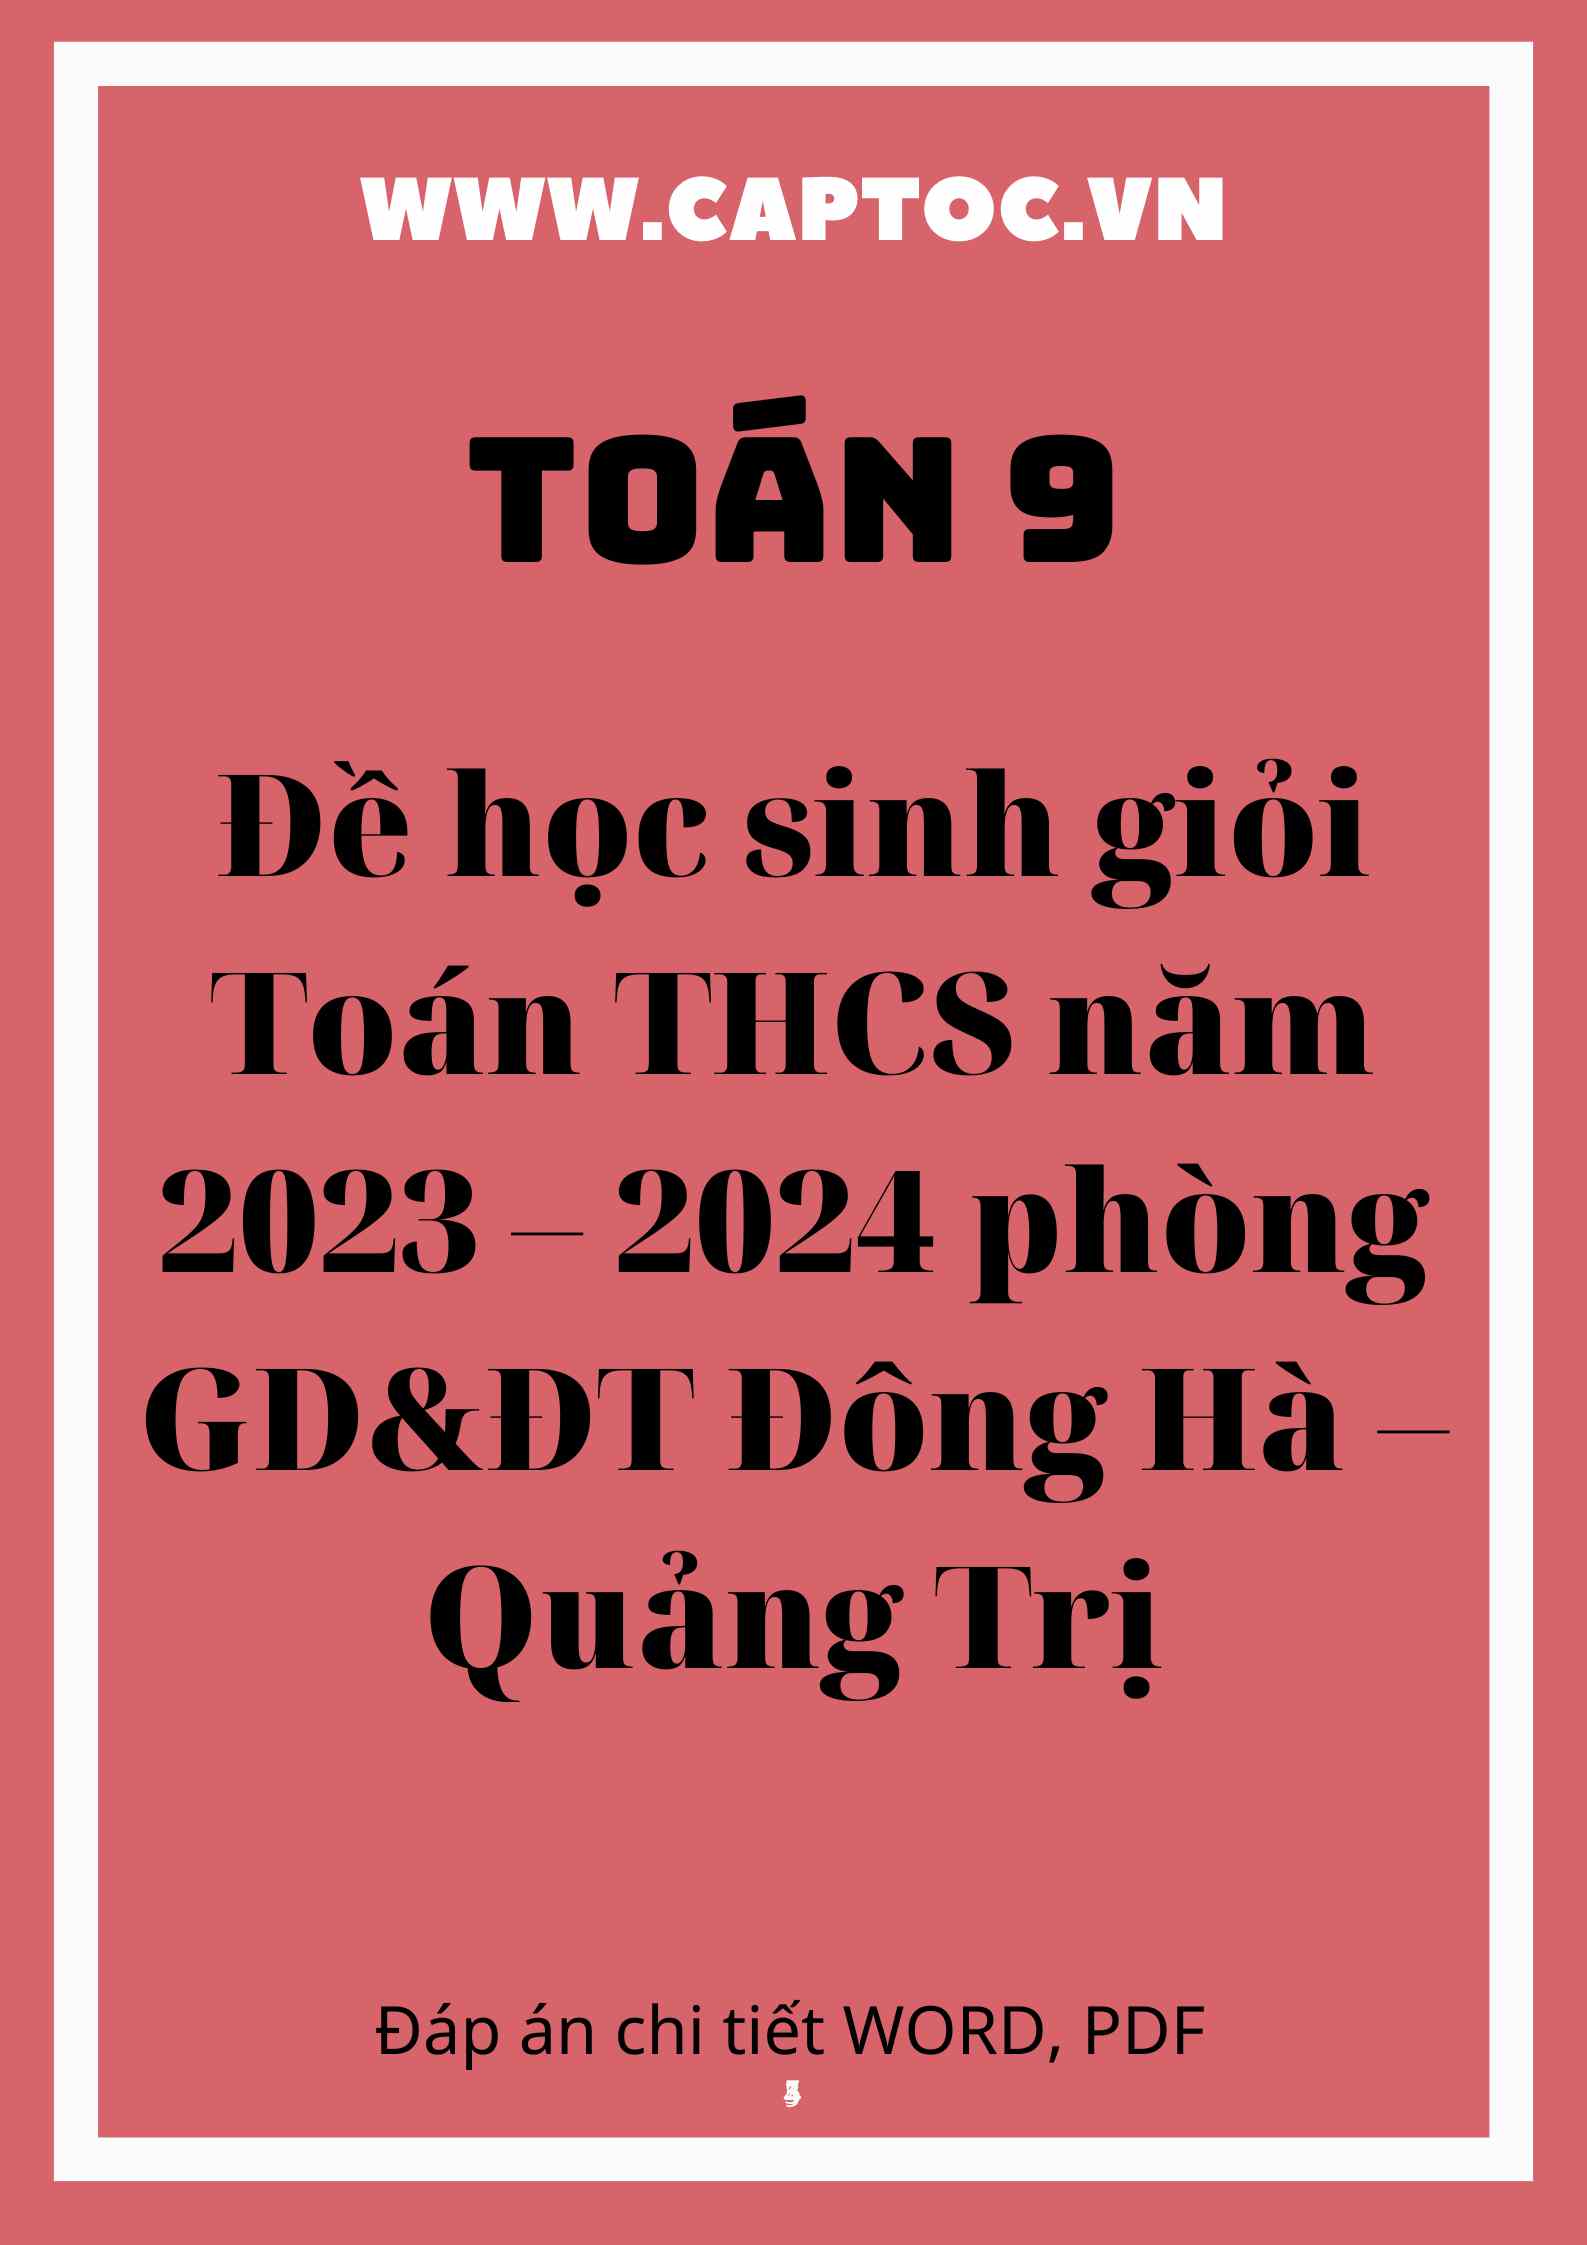 Đề học sinh giỏi Toán THCS năm 2023 – 2024 phòng GD&ĐT Đông Hà – Quảng Trị